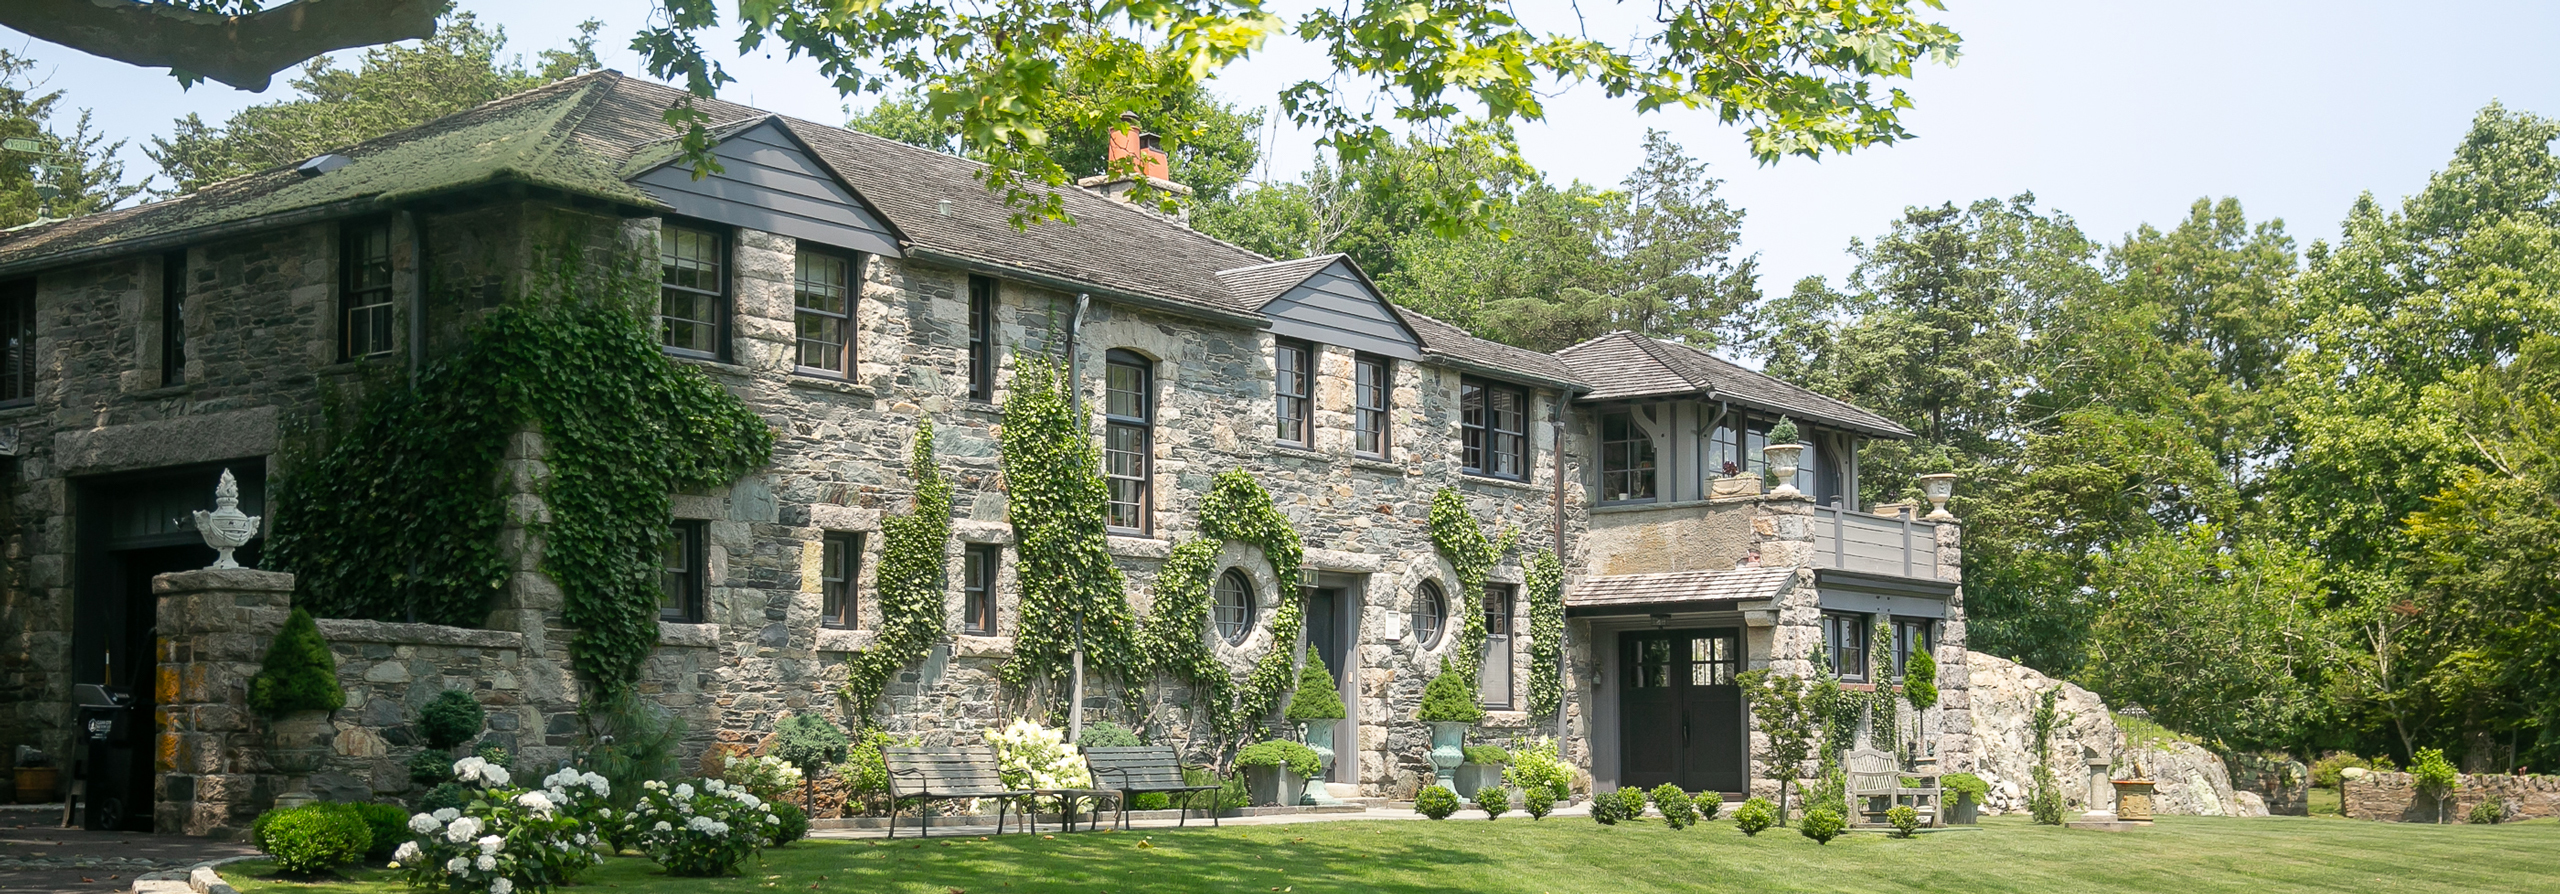 Stone mansion in Newport RI